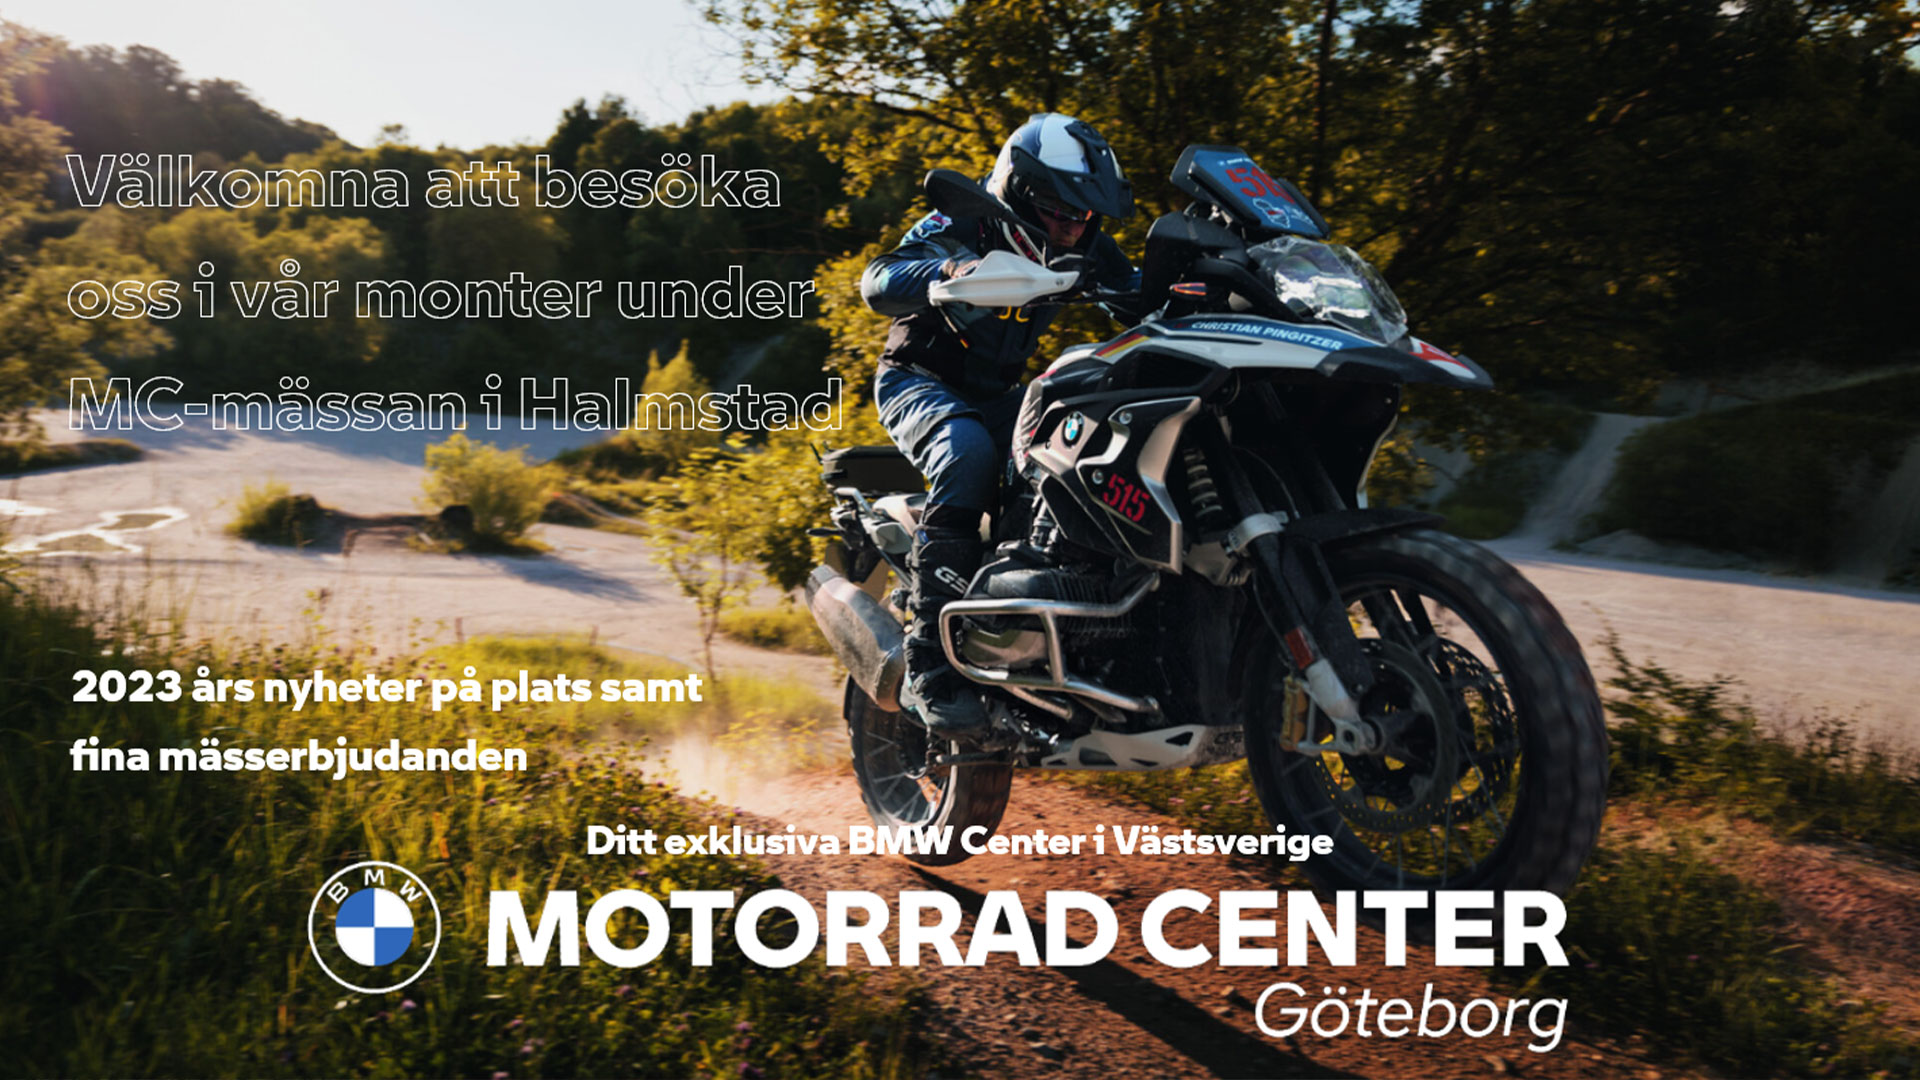 Motorrad center Göteborg